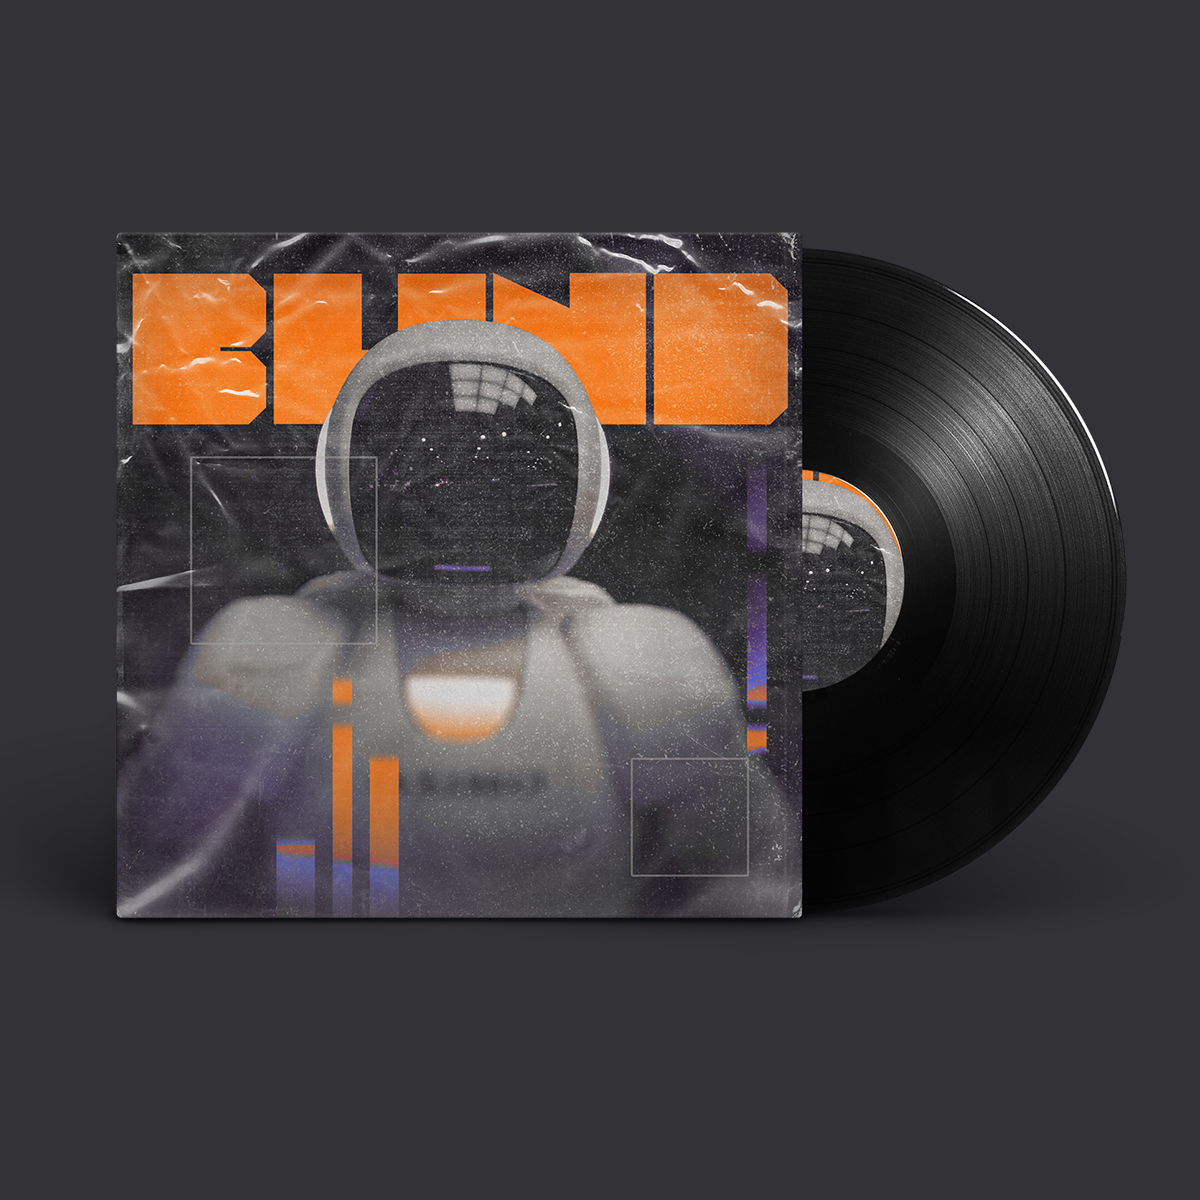 Blind Album Cover Design